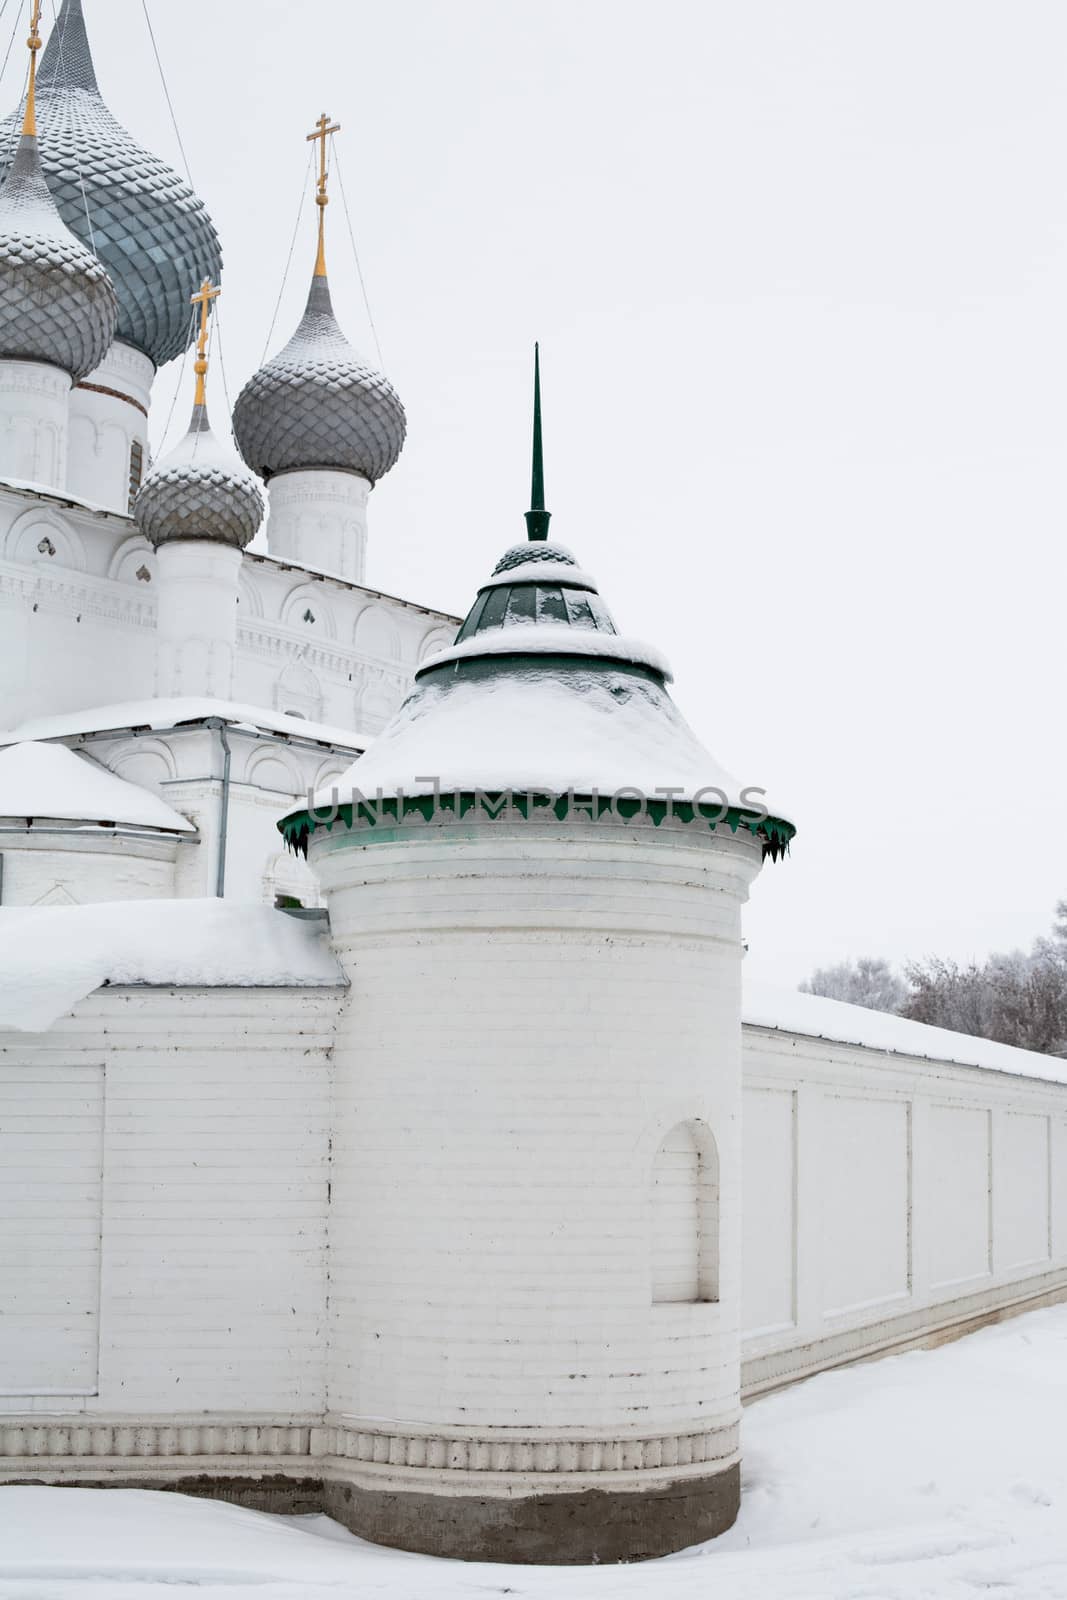 White church in winter in Uglich
